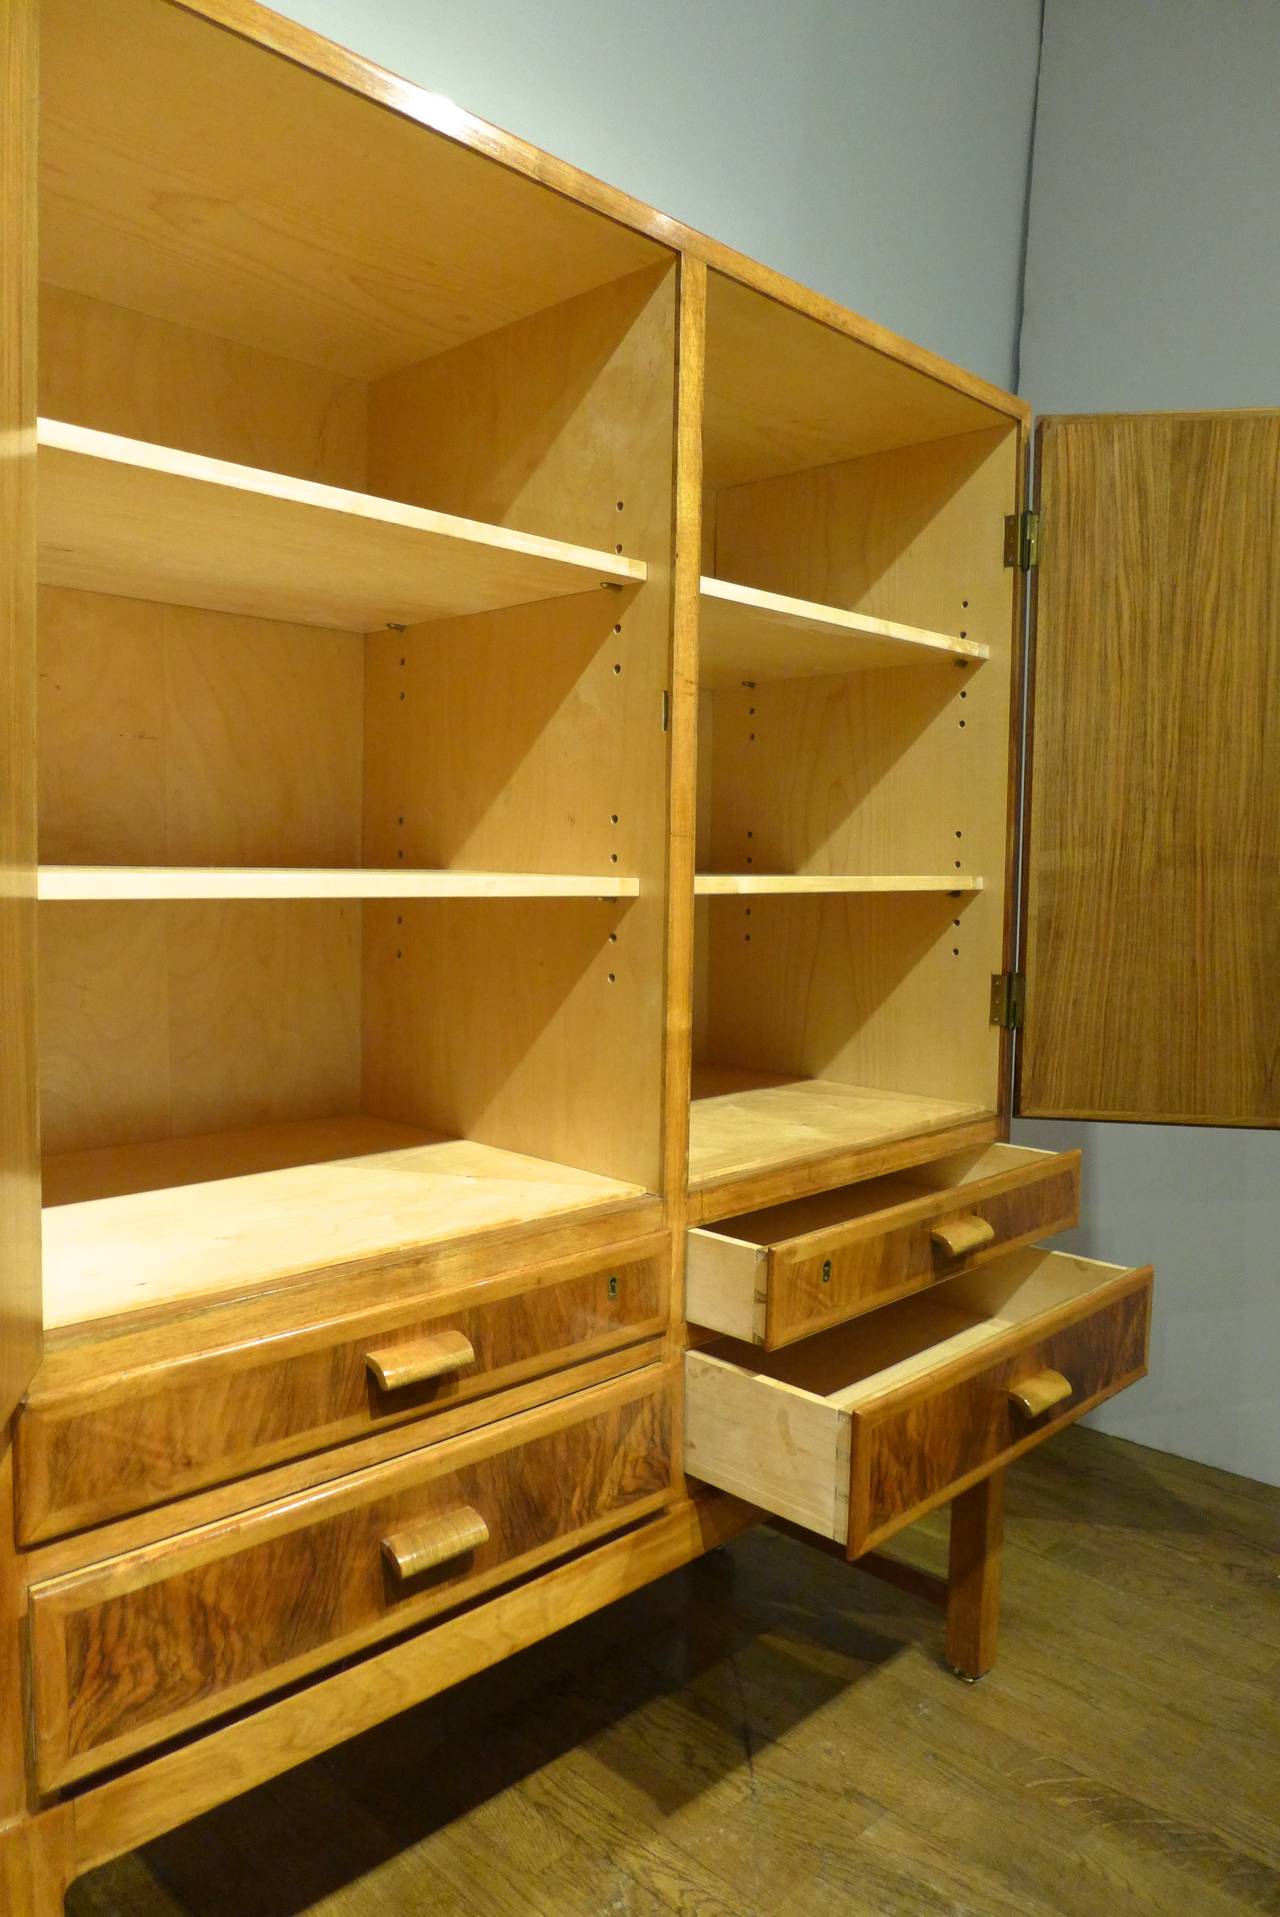 Service Cabinet by Danish Craftsman Peder Pedersen 1